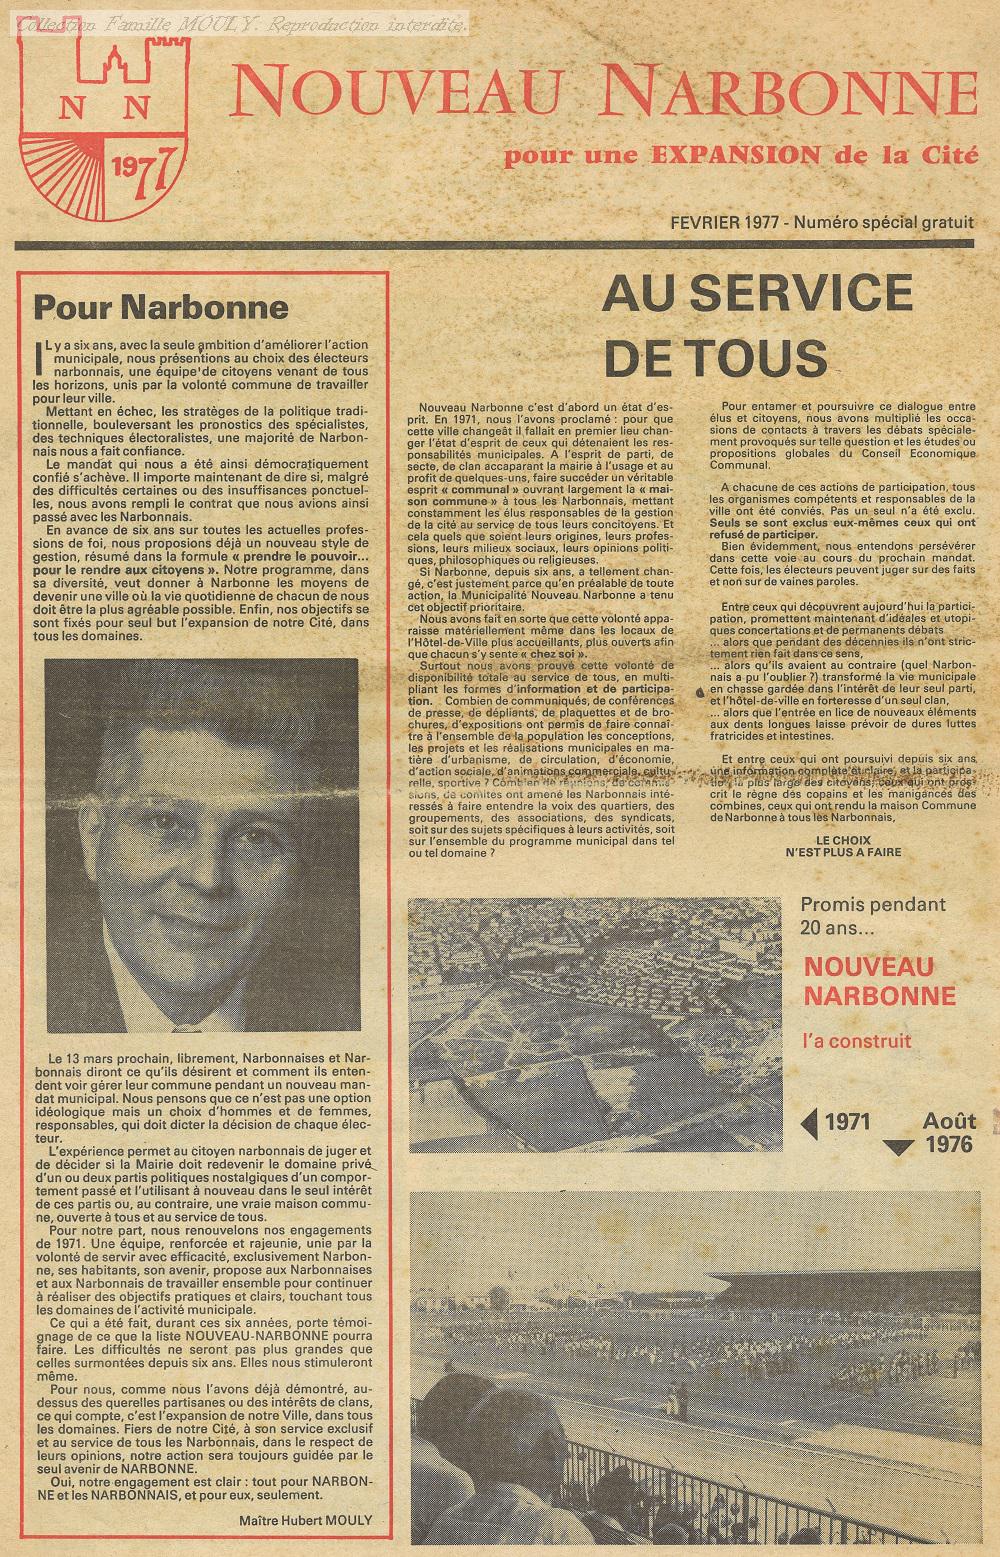 Bulletin NOUVEAU NARBONNE février 1977, bulletin de campagne.